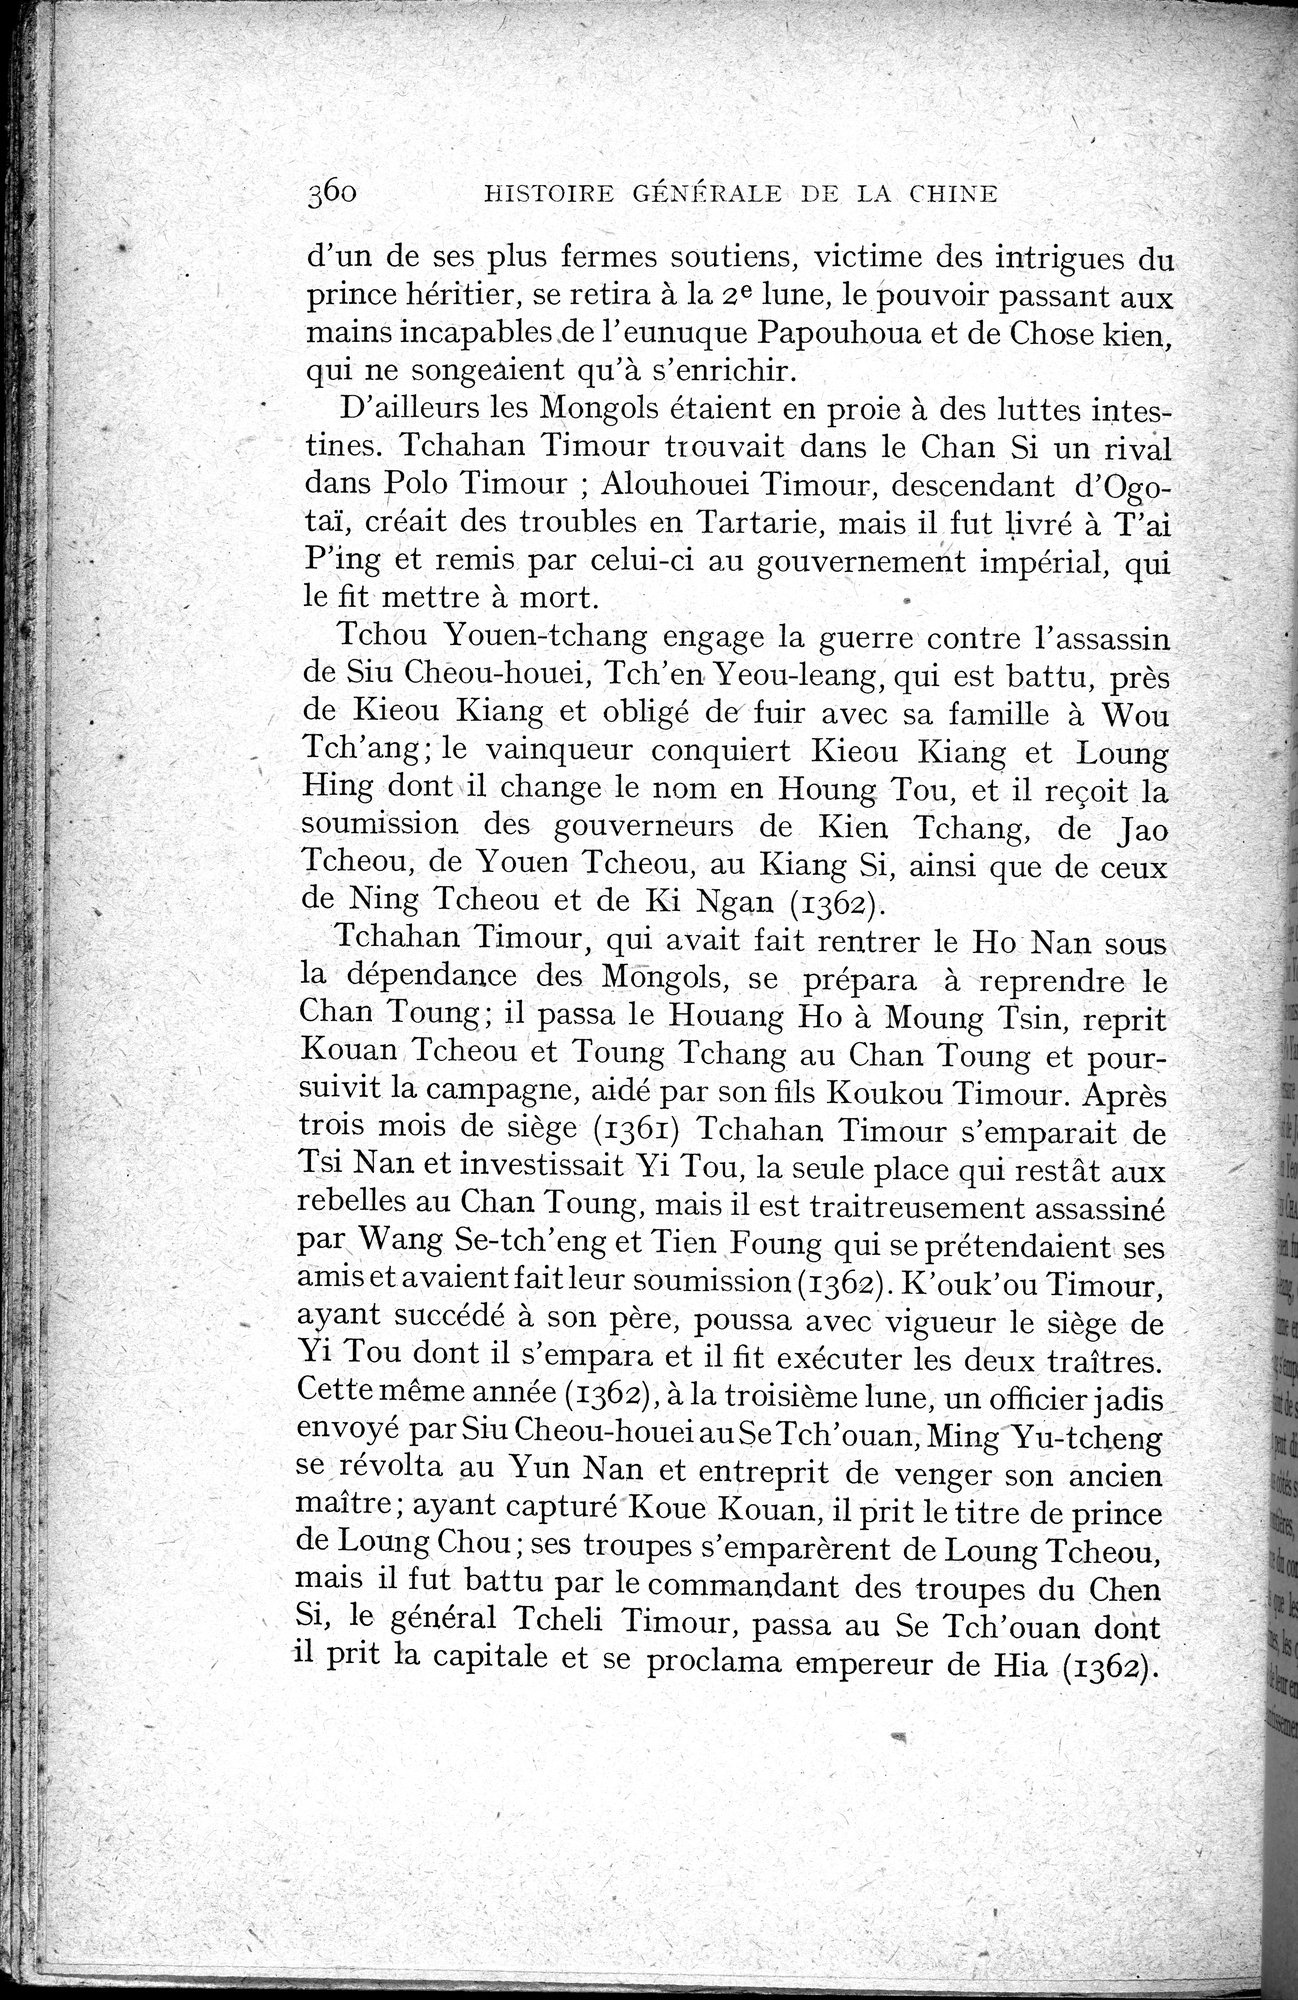 Histoire Générale de la Chine : vol.2 / Page 362 (Grayscale High Resolution Image)